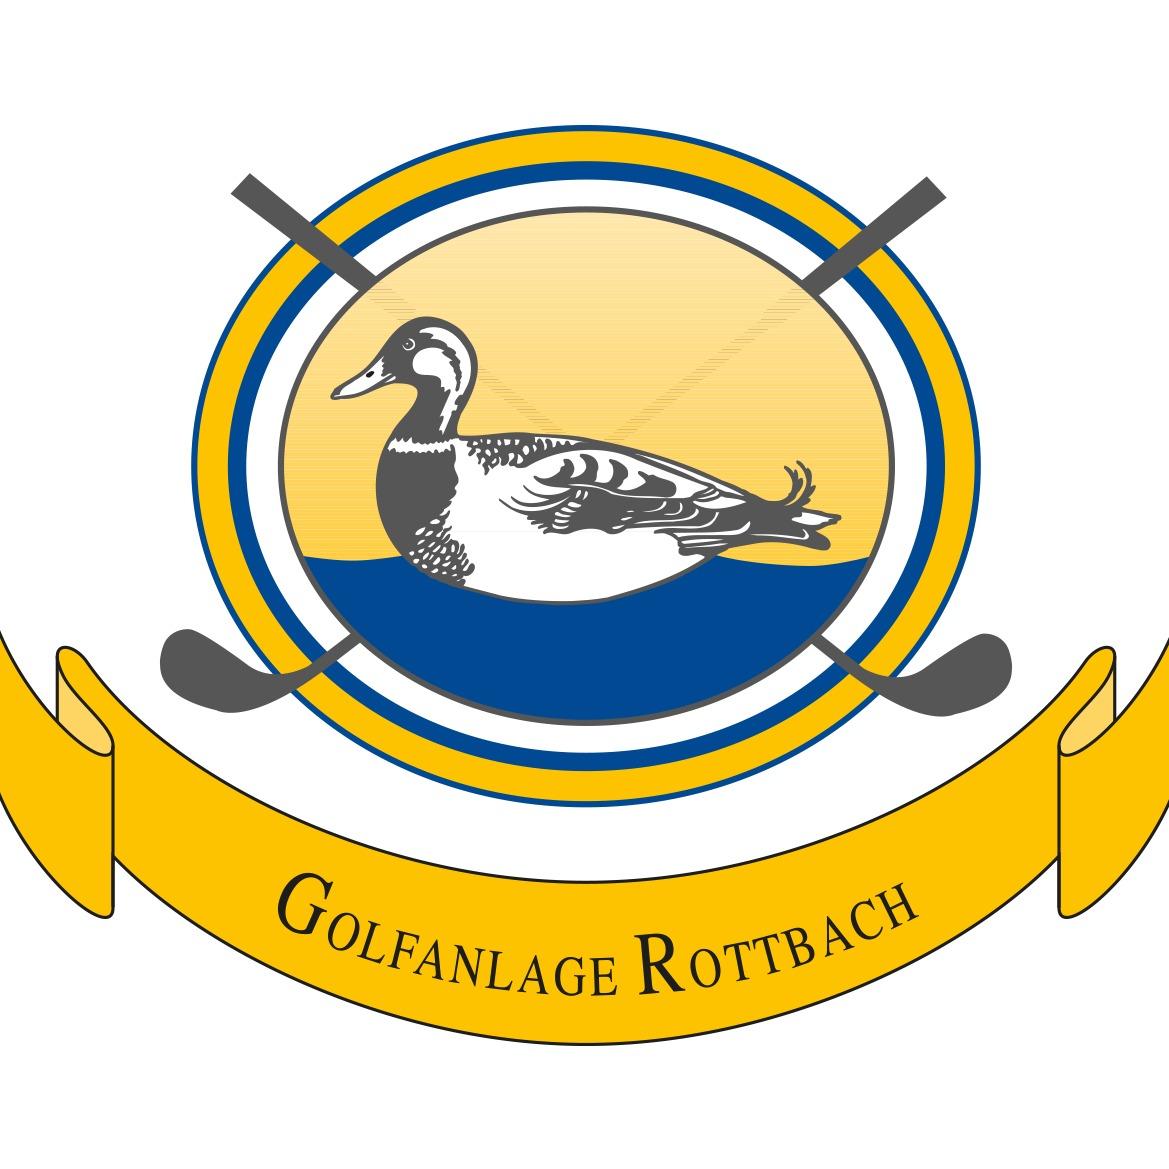 Golfanlage Rottbach in Maisach - Logo